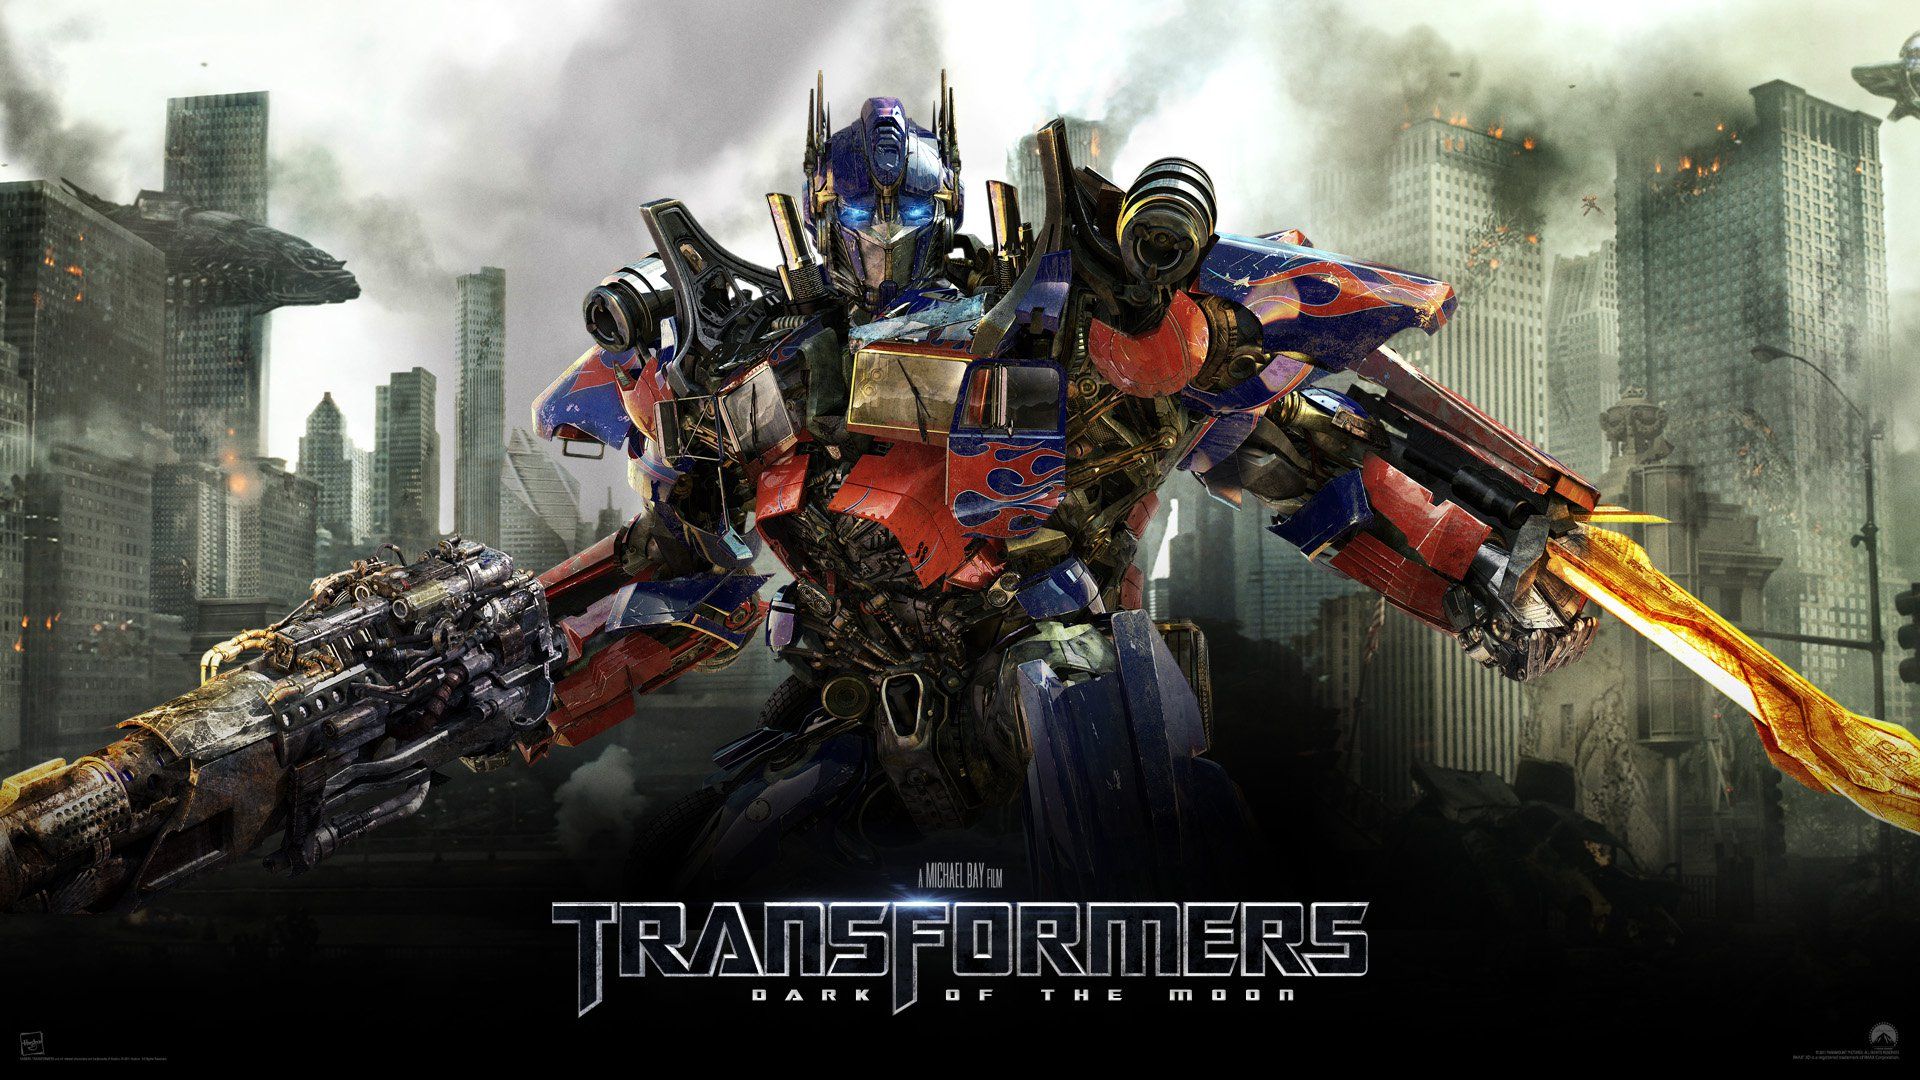 Imagenes Transformers wallpapers hd - Taringa!